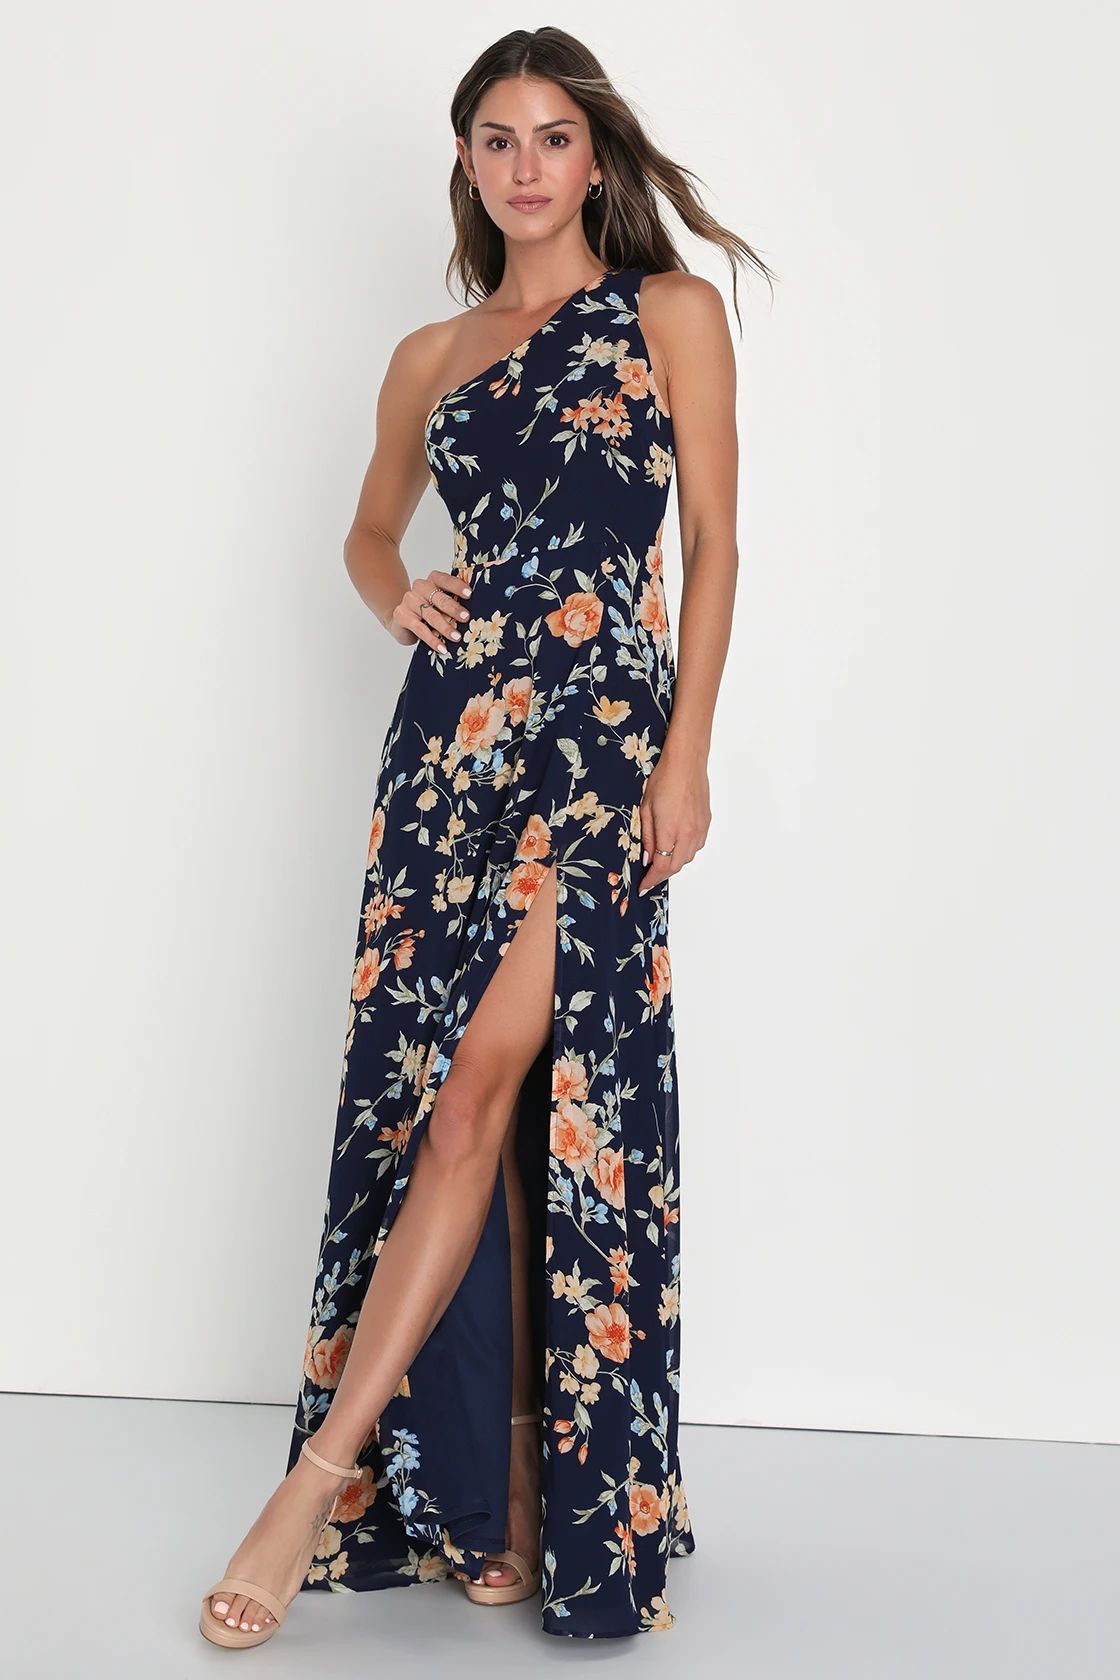 Elegant Admiration Navy Blue Floral One-Shoulder Maxi Dress | Lulus